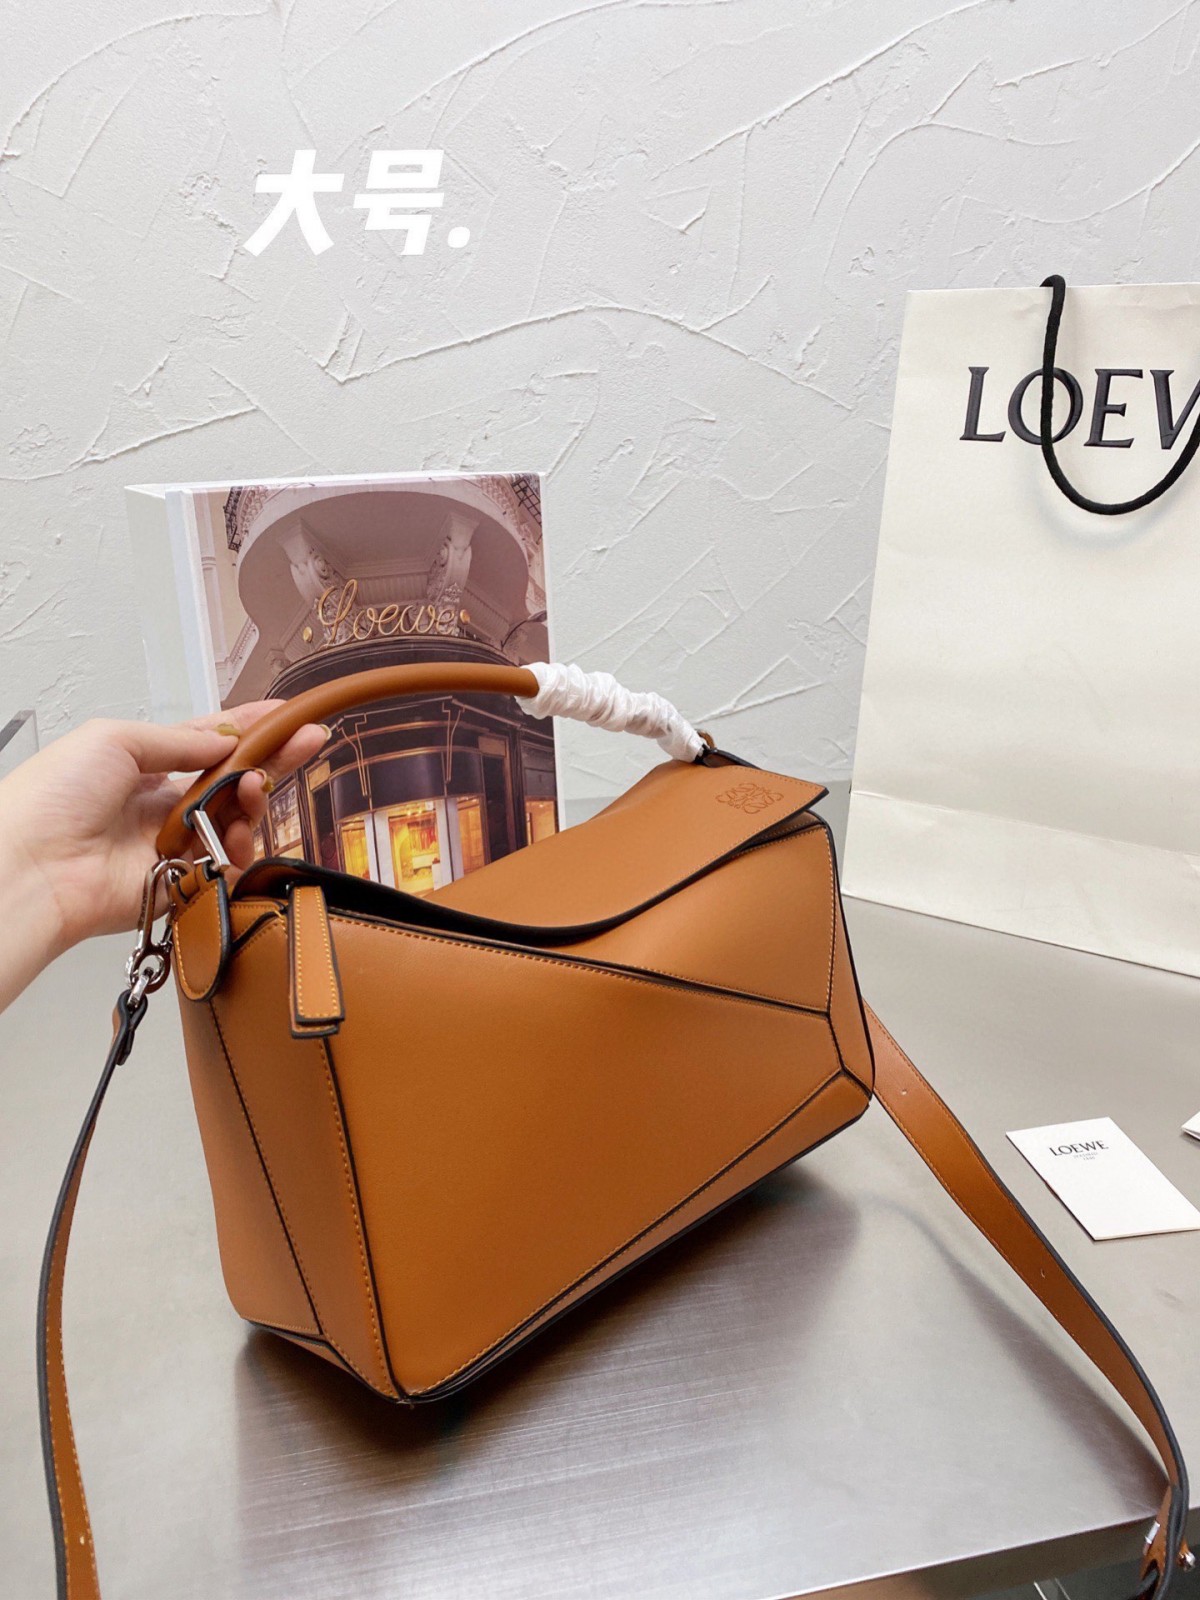 Kvalitní a levné replikové tašky Loewe Puzzle, cena je pouze 199 $? (Nejnovější z roku 2022) – Nejkvalitnější falešná taška Louis Vuitton Online obchod, Replica designer bag ru